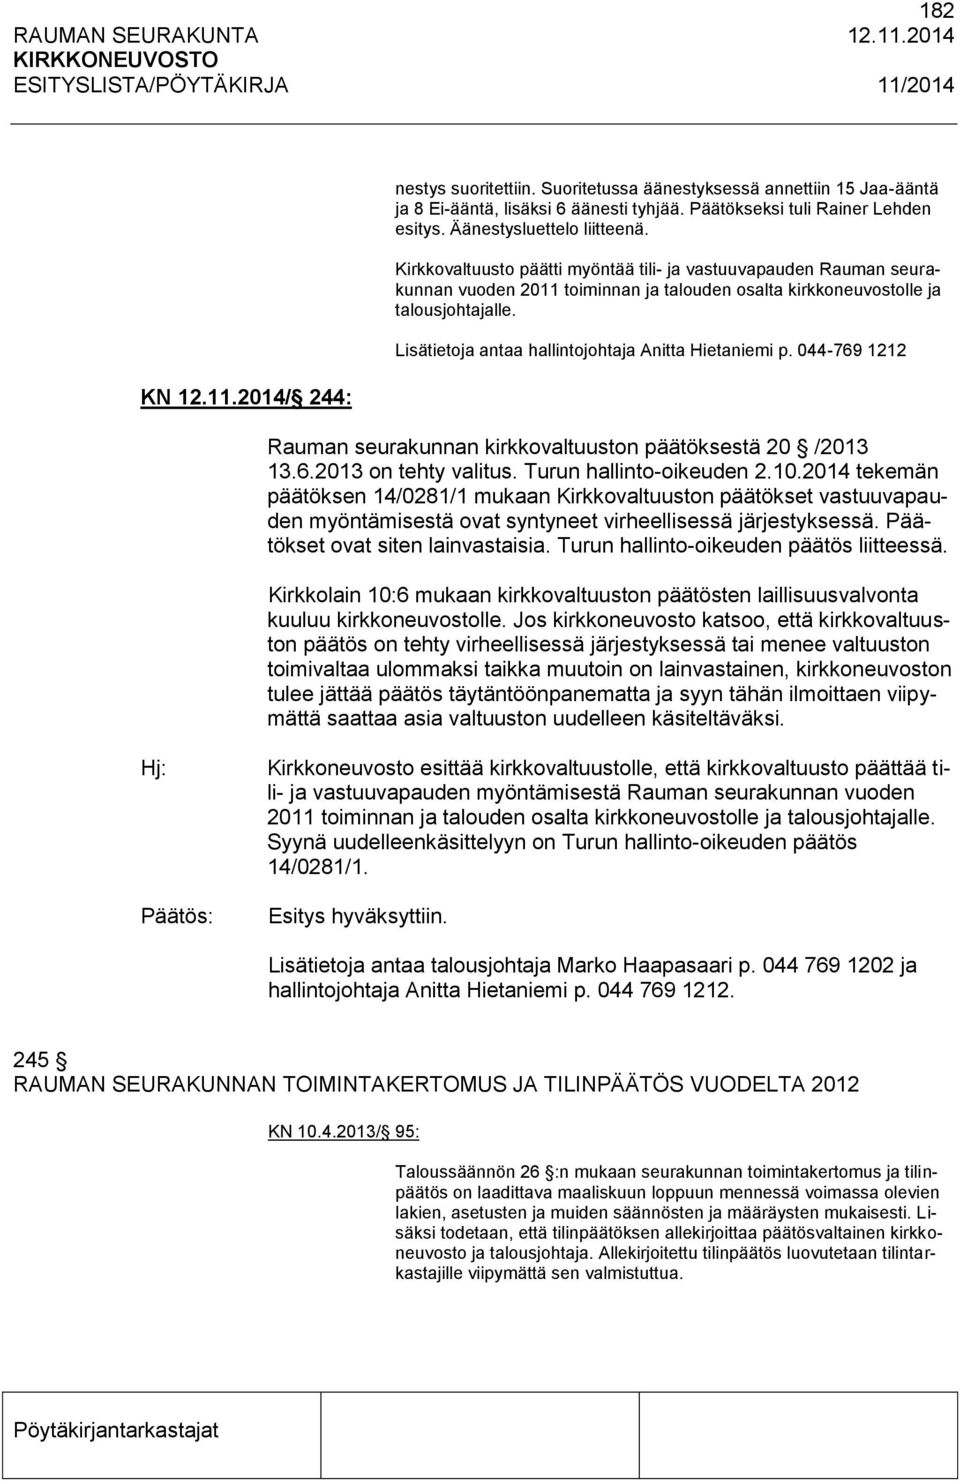 Lisätietoja antaa hallintojohtaja Anitta Hietaniemi p. 044-769 1212 Rauman seurakunnan kirkkovaltuuston päätöksestä 20 /2013 13.6.2013 on tehty valitus. Turun hallinto-oikeuden 2.10.